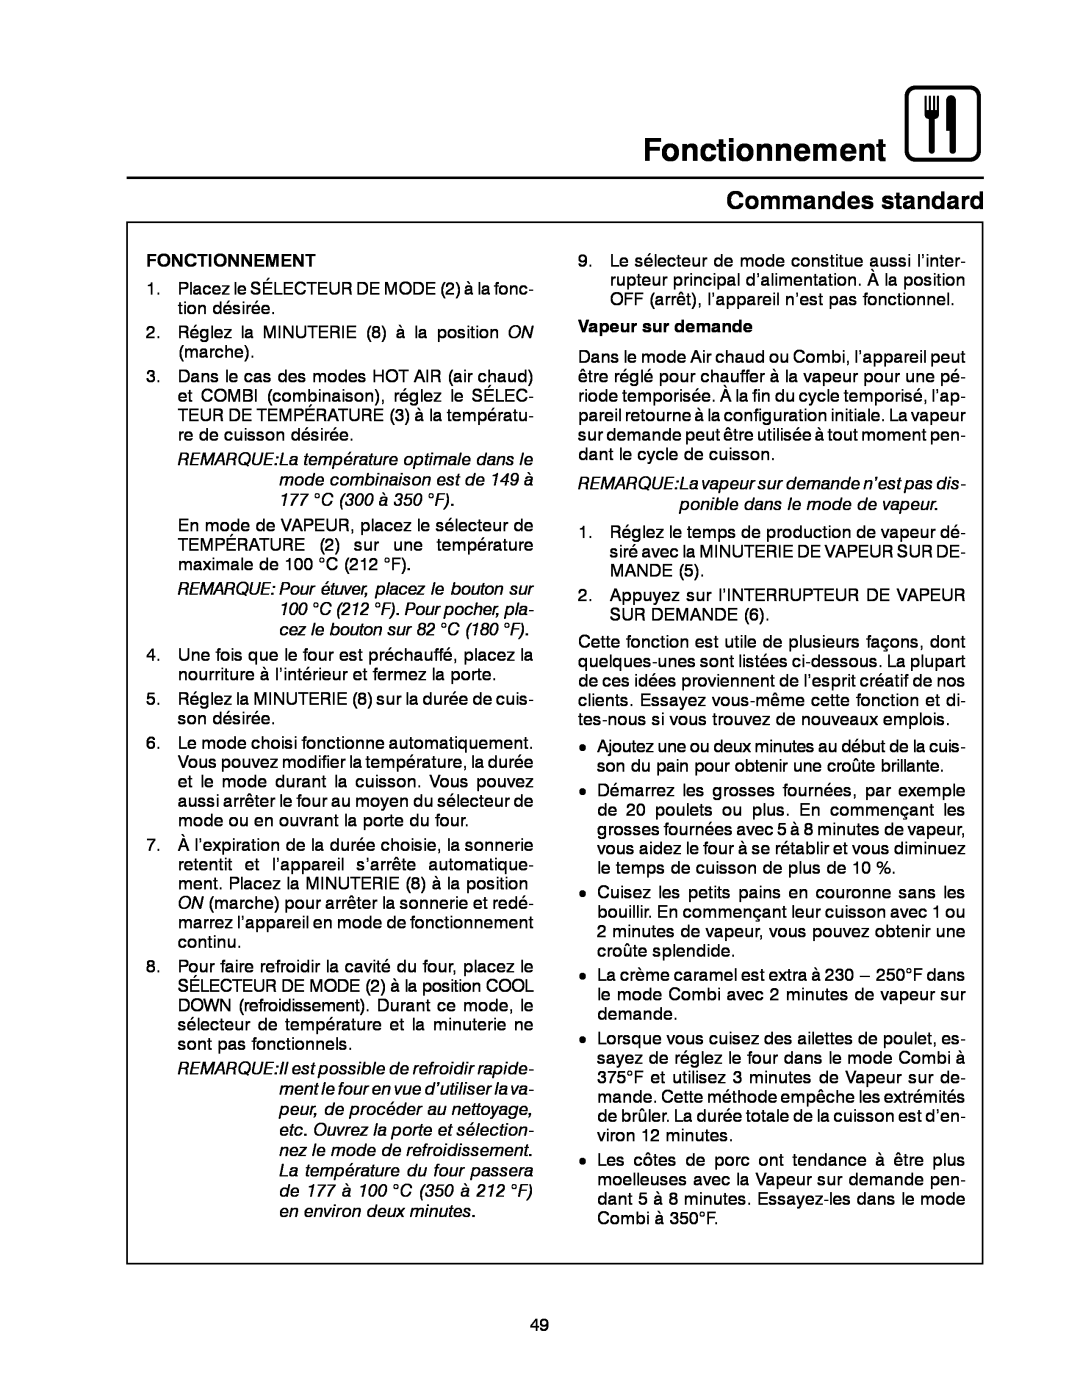 Blodgett BC-20G manual Fonctionnement, Commandes standard, Vapeur sur demande 